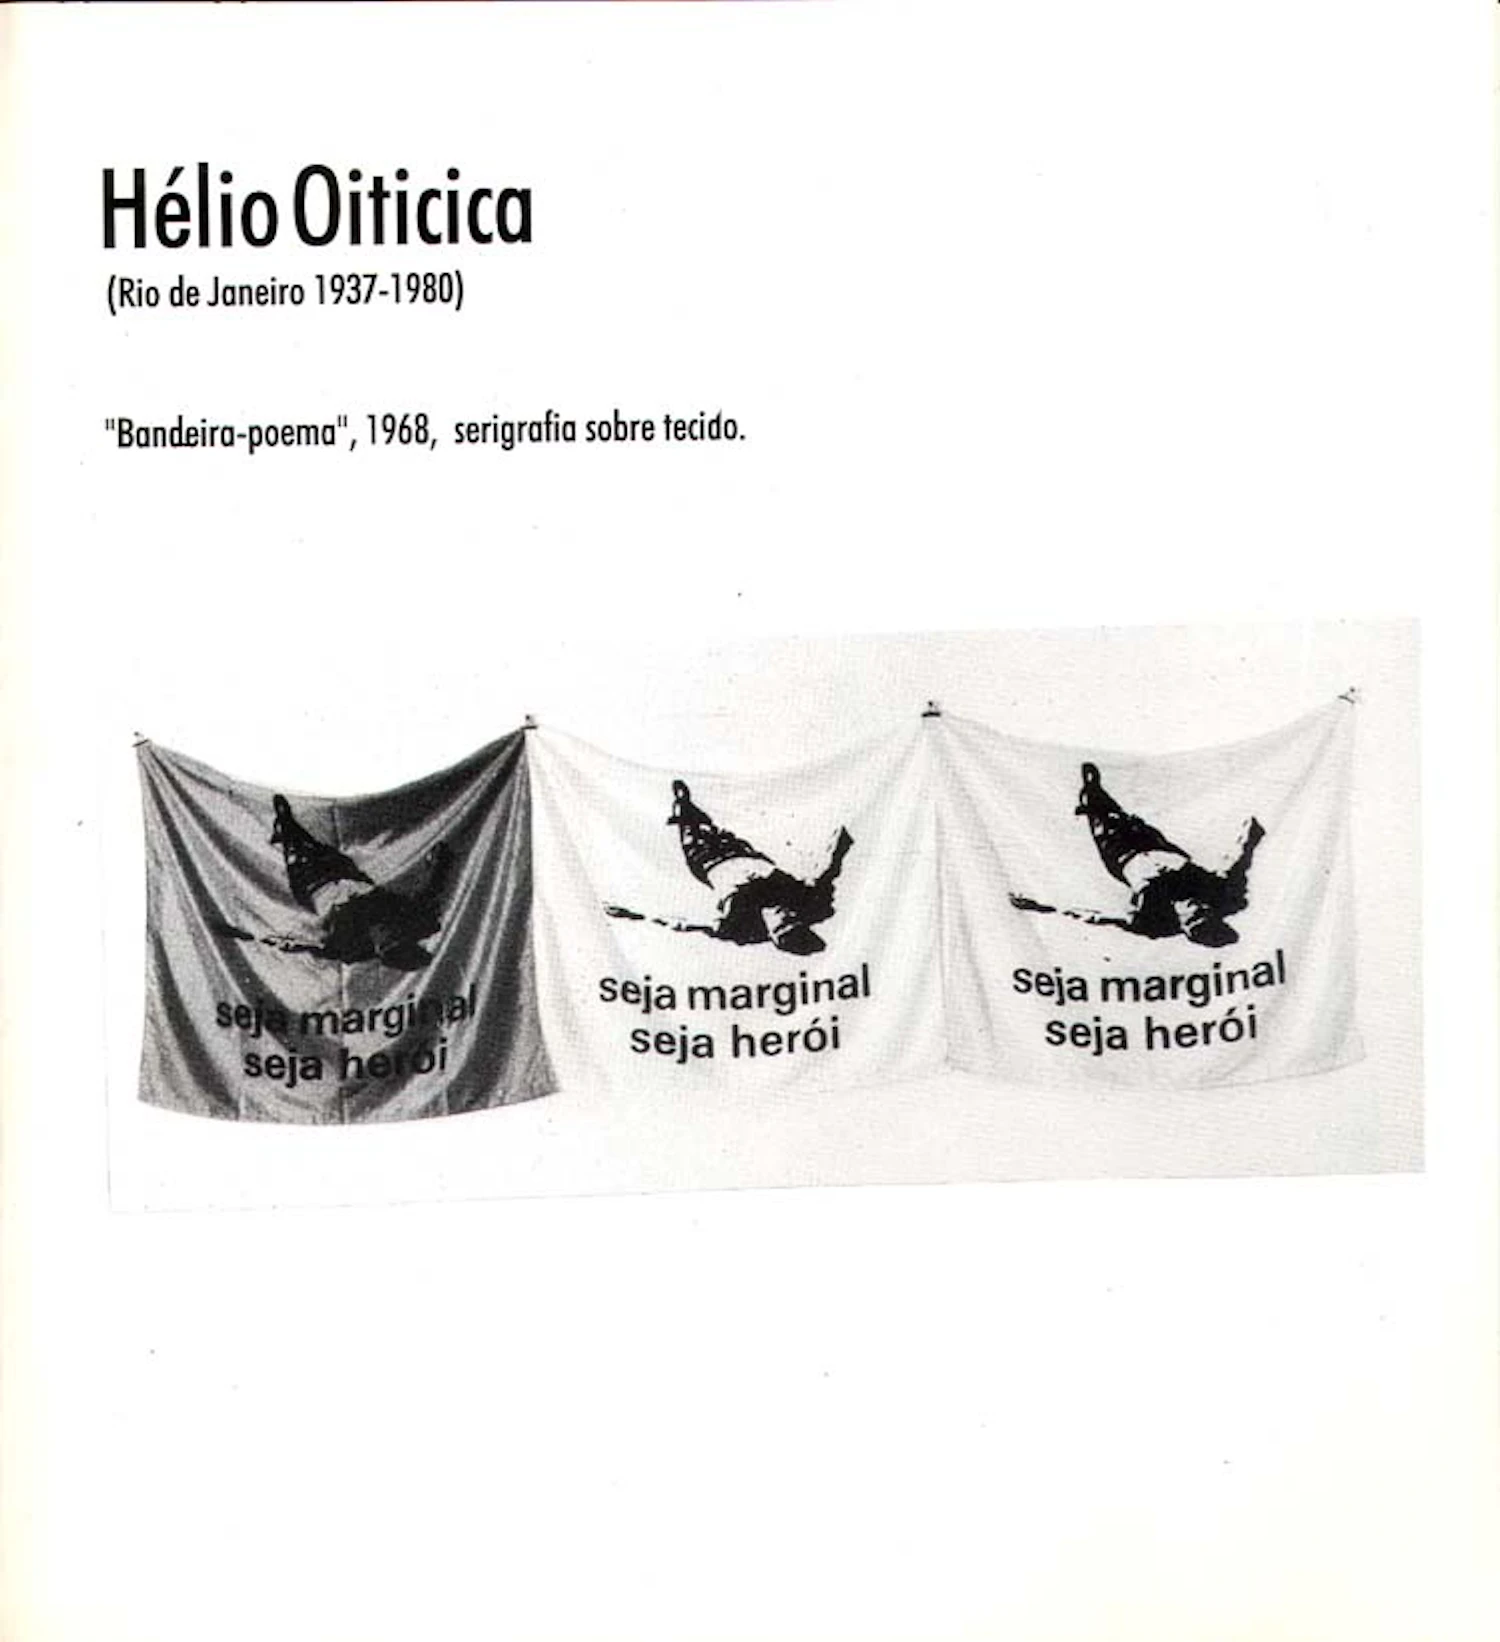 図版2：「社会の除け者であれ、英雄であれ（seja marginal seja herói）」と書かれた旗（1968年）Projeto Hélio Oiticica, doc. no. 2474. 95-p4.